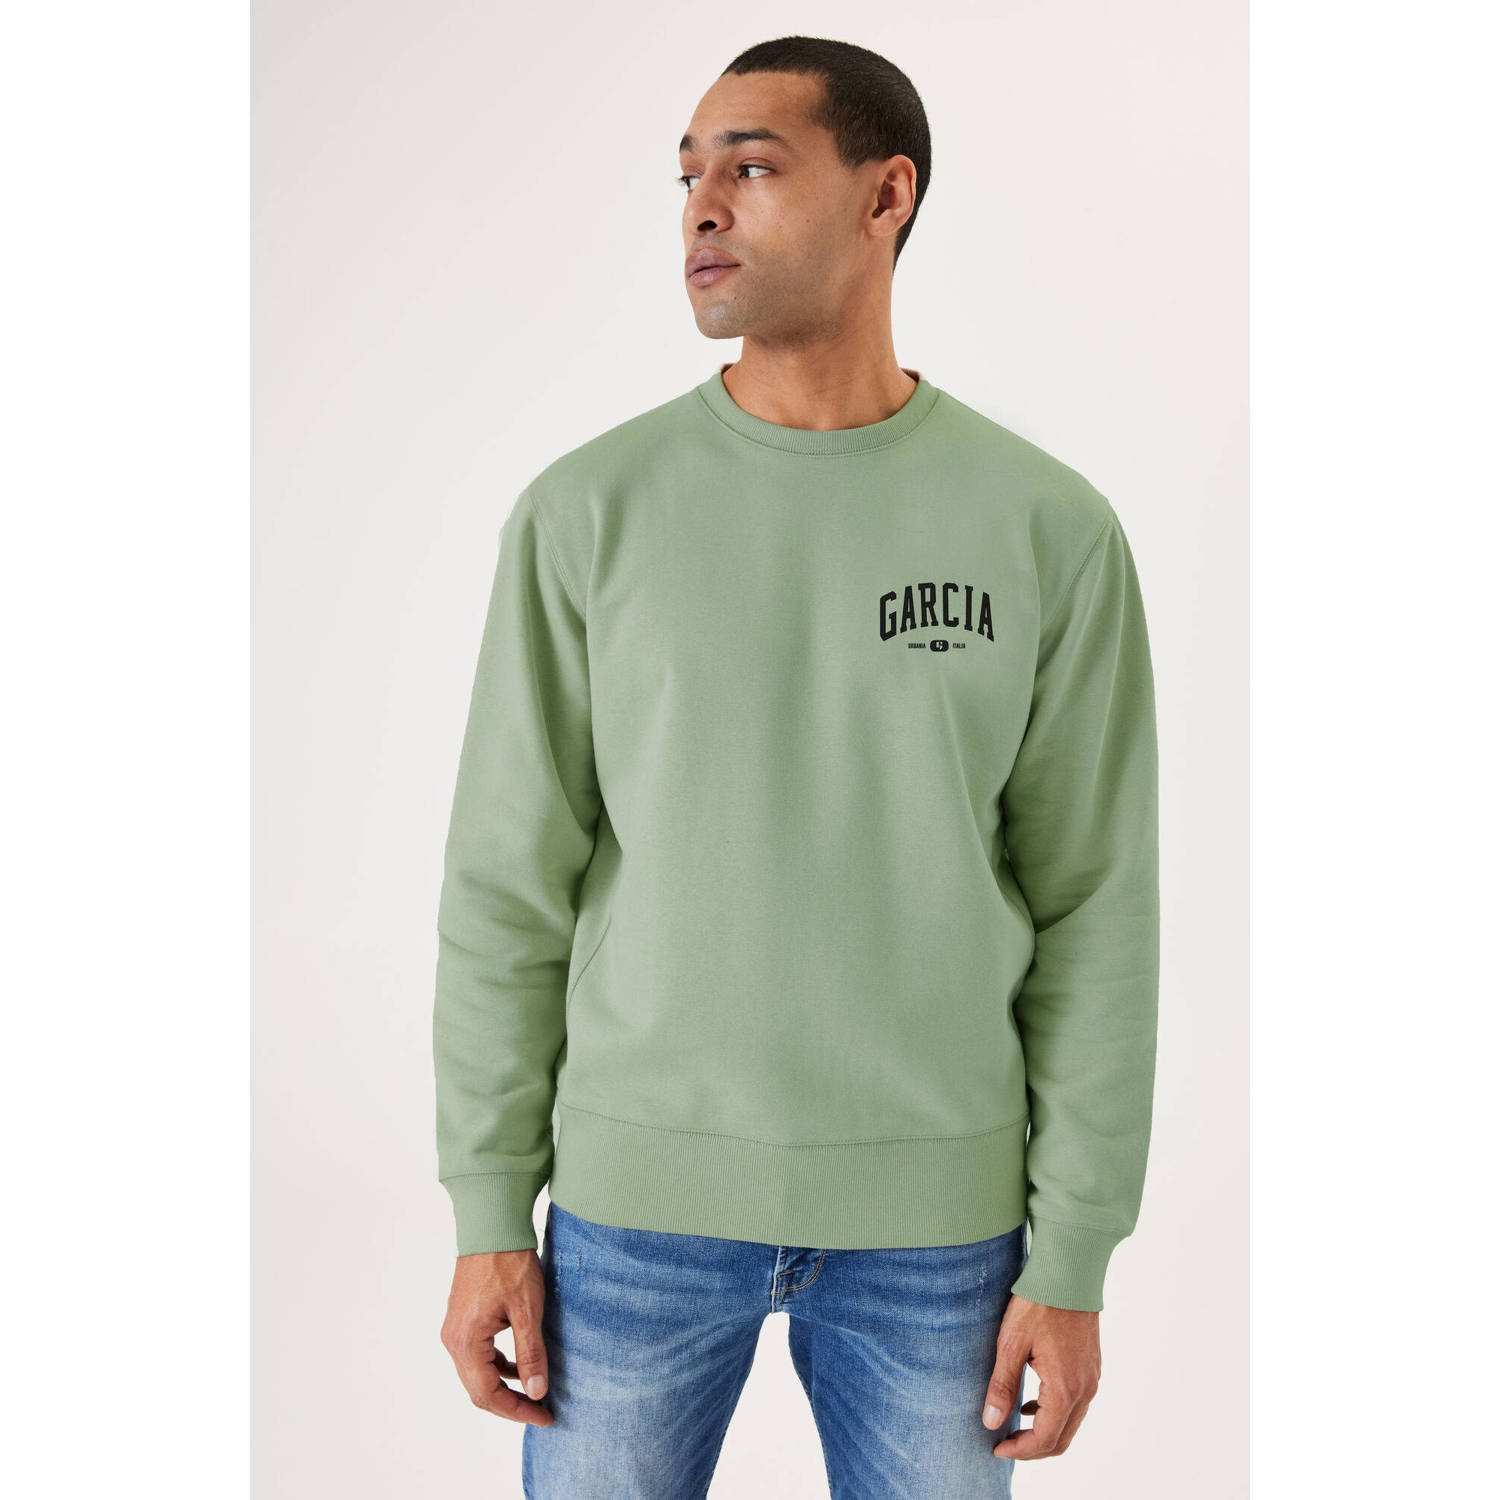 Garcia sweater met logo lichtgroen